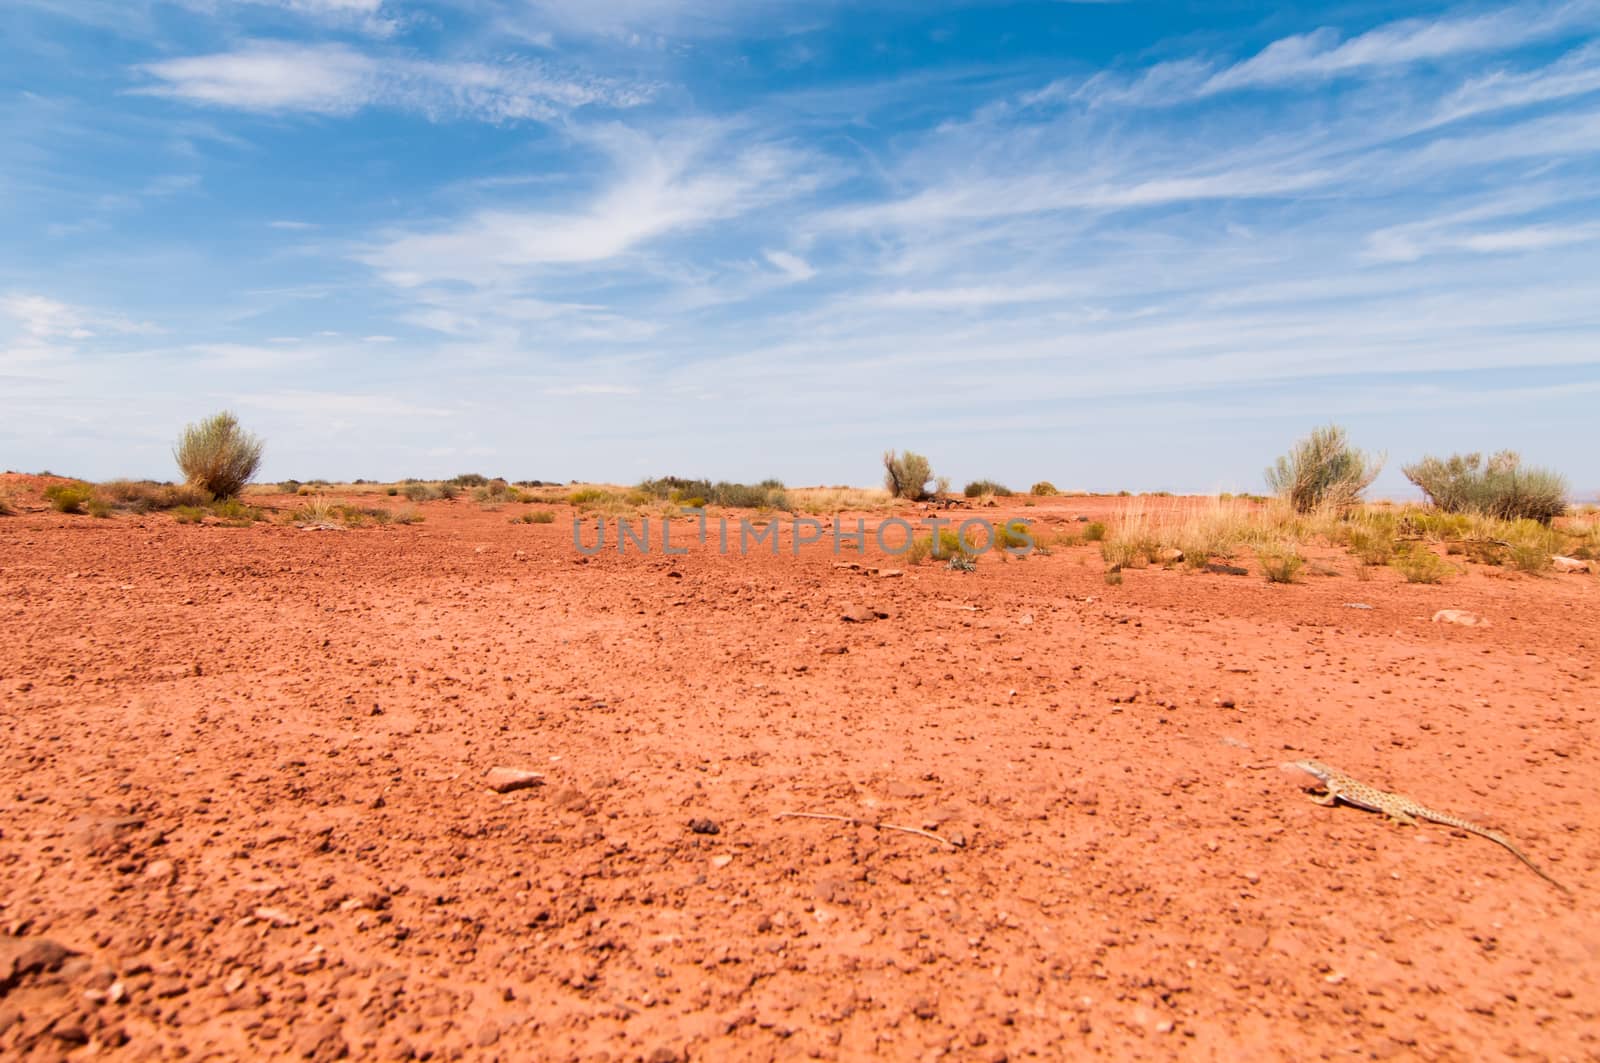 Expansive desert landscape featuring a small lizard